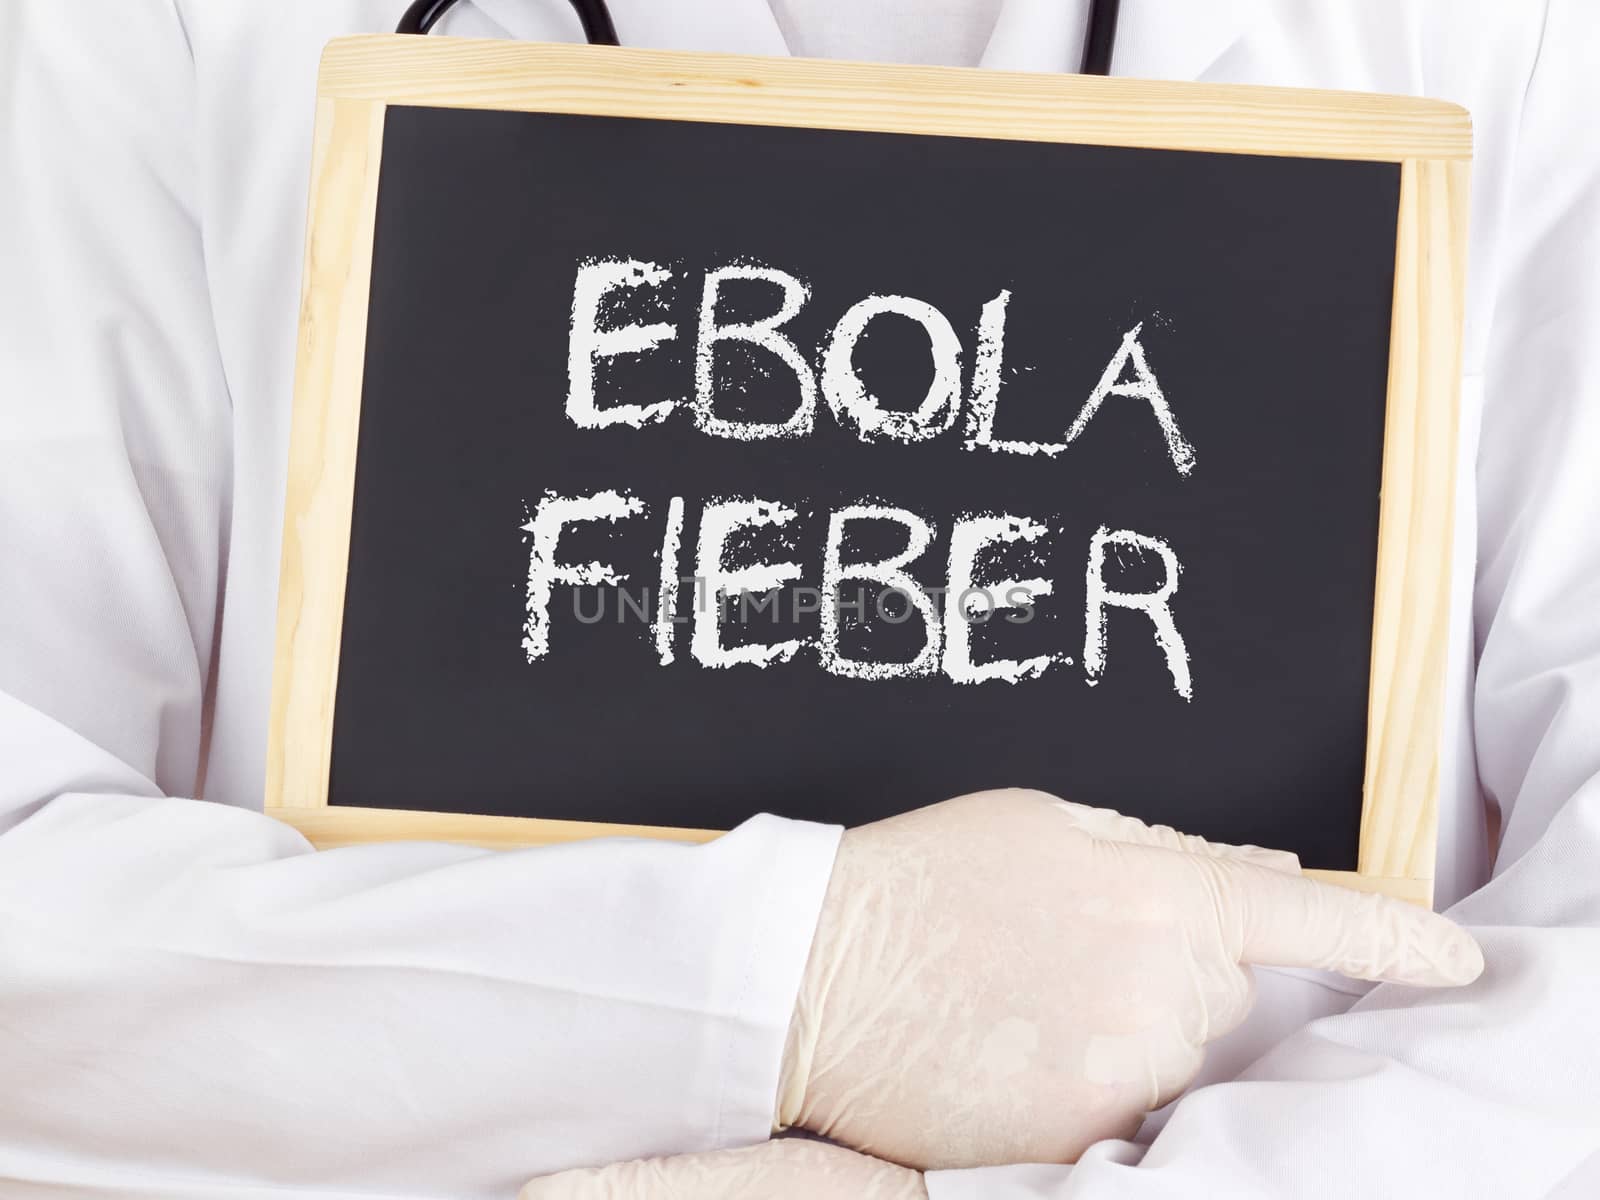 Doctor shows information: Ebola virus disease in german